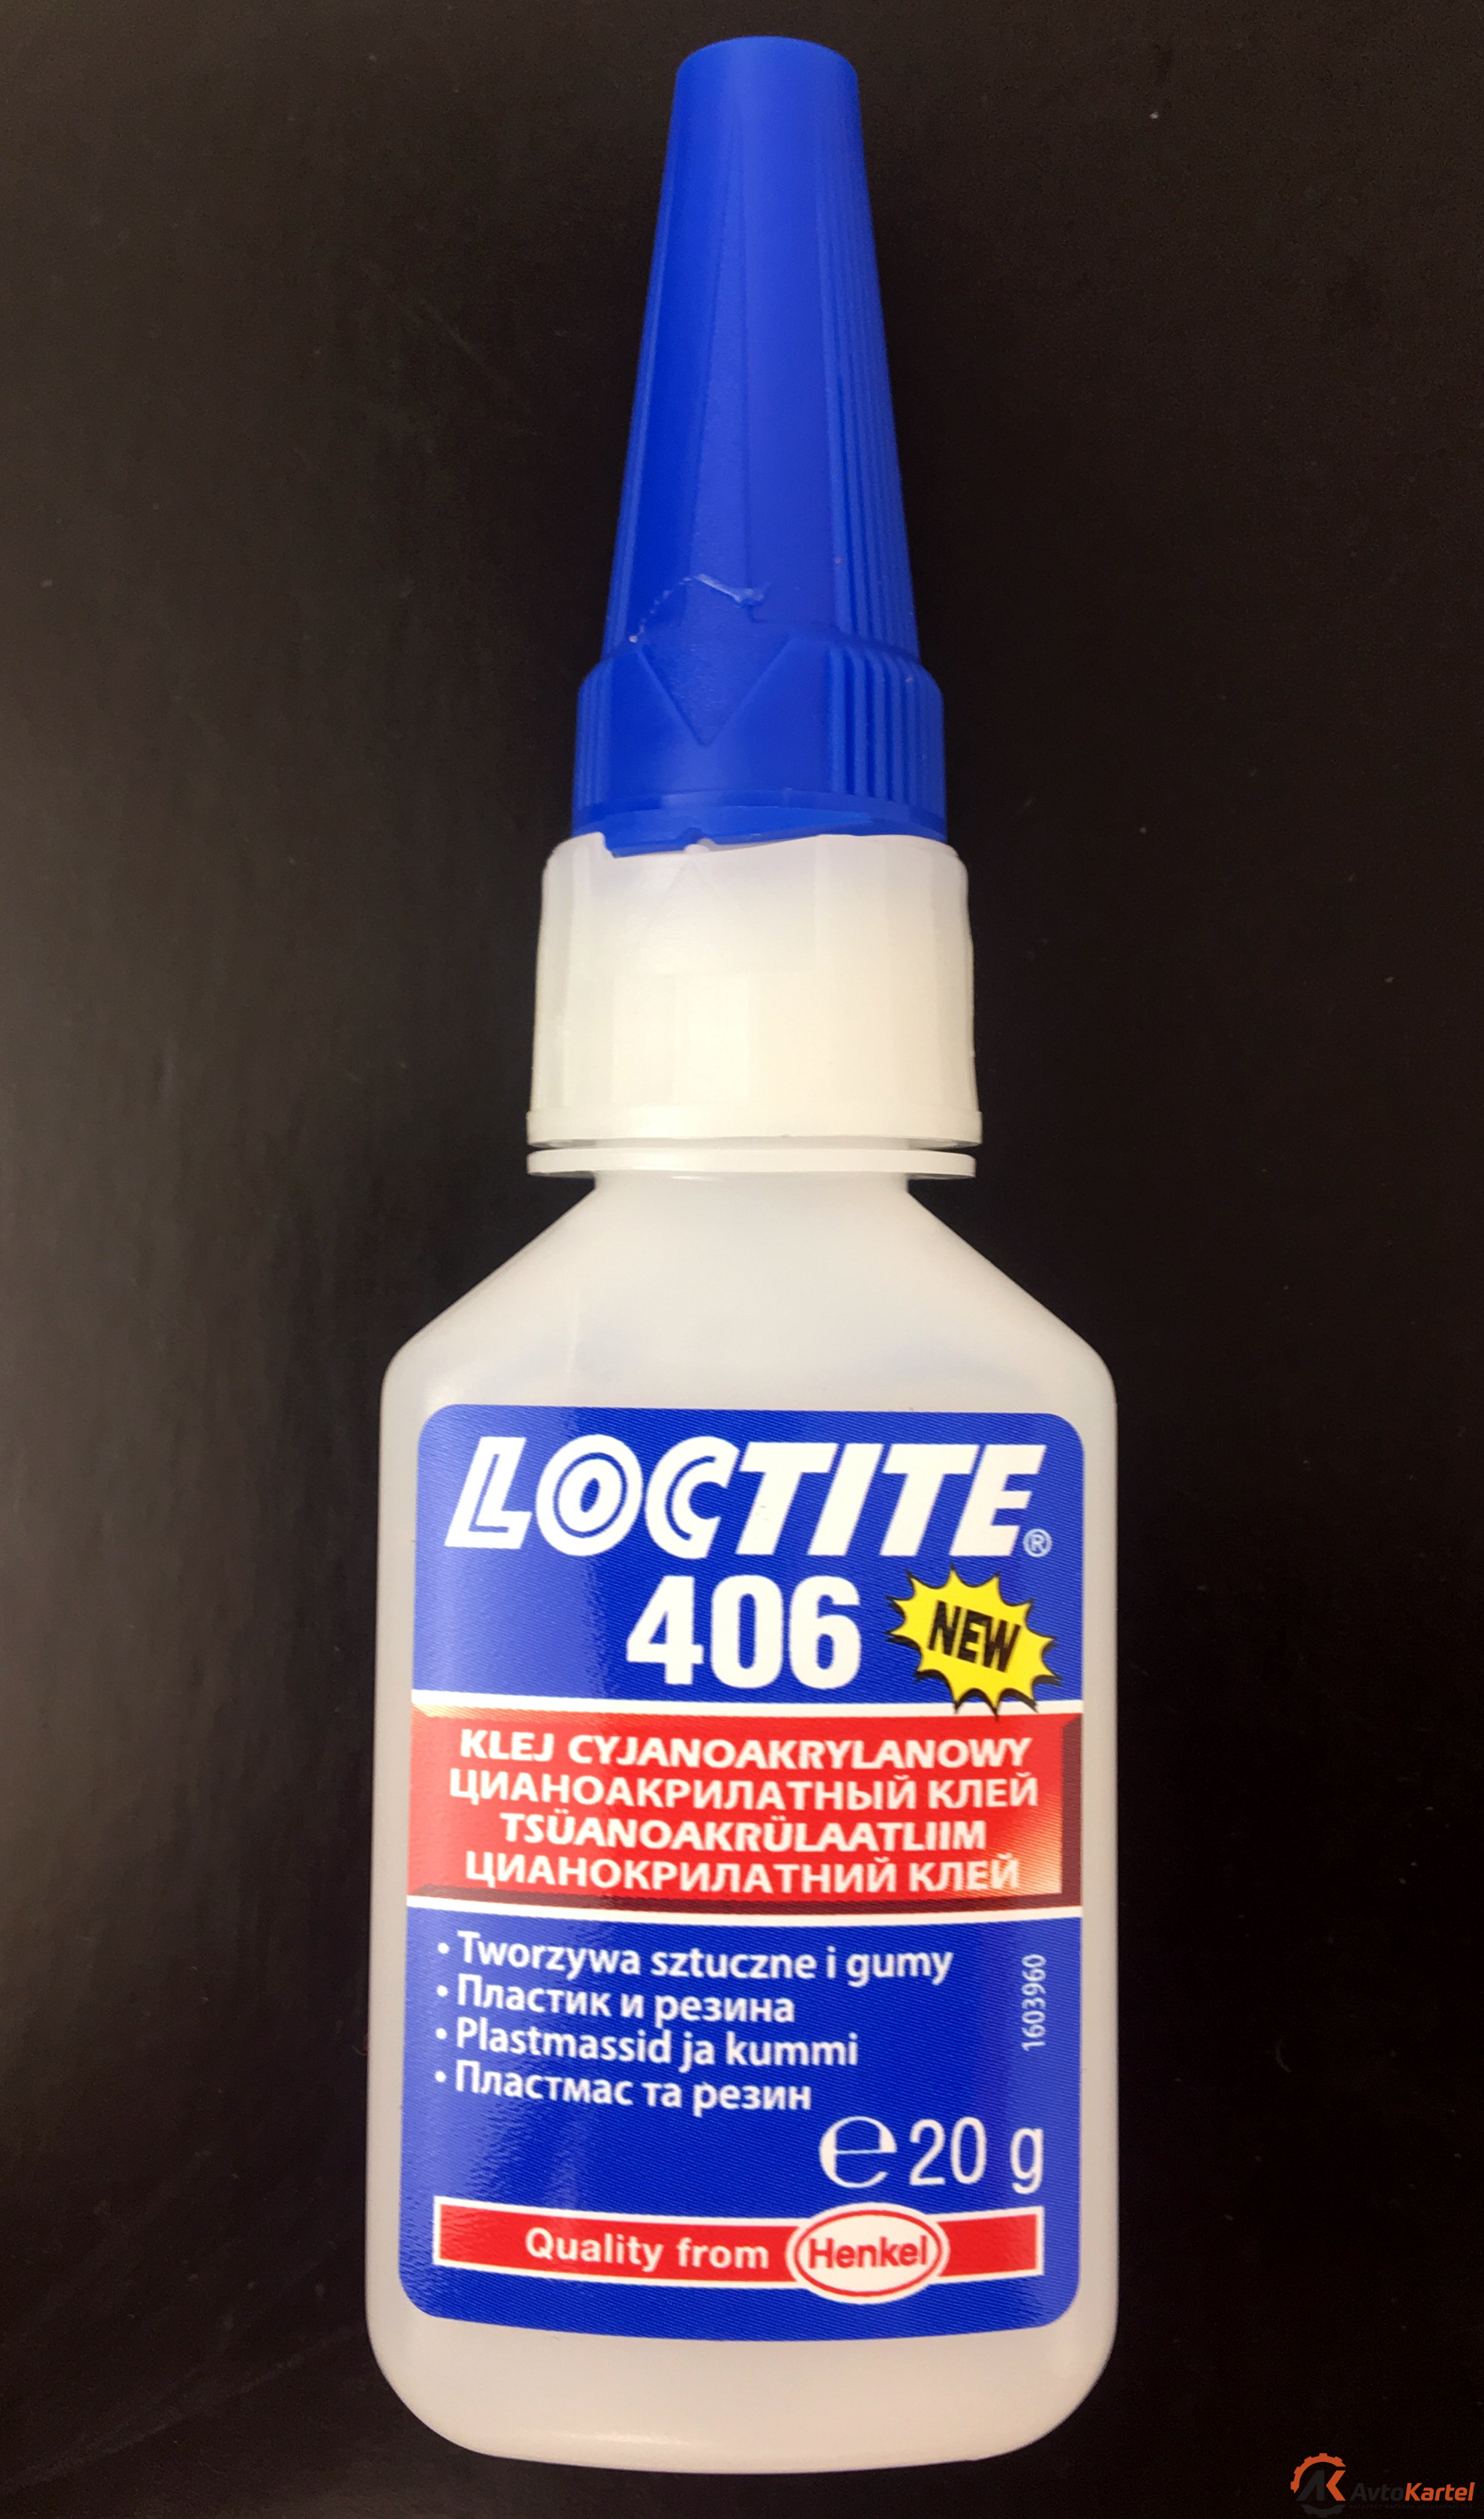 Клей для моментального склеивания LOCTITE 406, низкая вязкость, для склеивания пластмассы и резины, 20 г